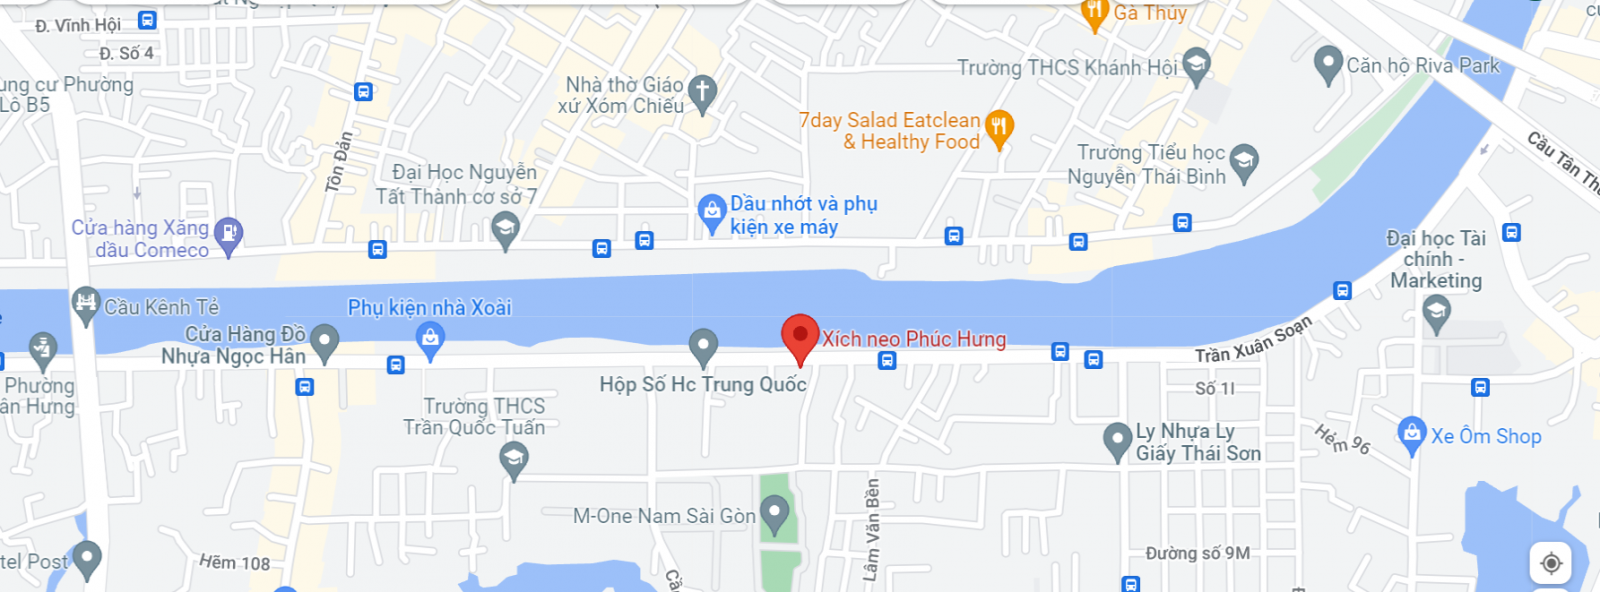 google map dia chi xich neo phuc hung